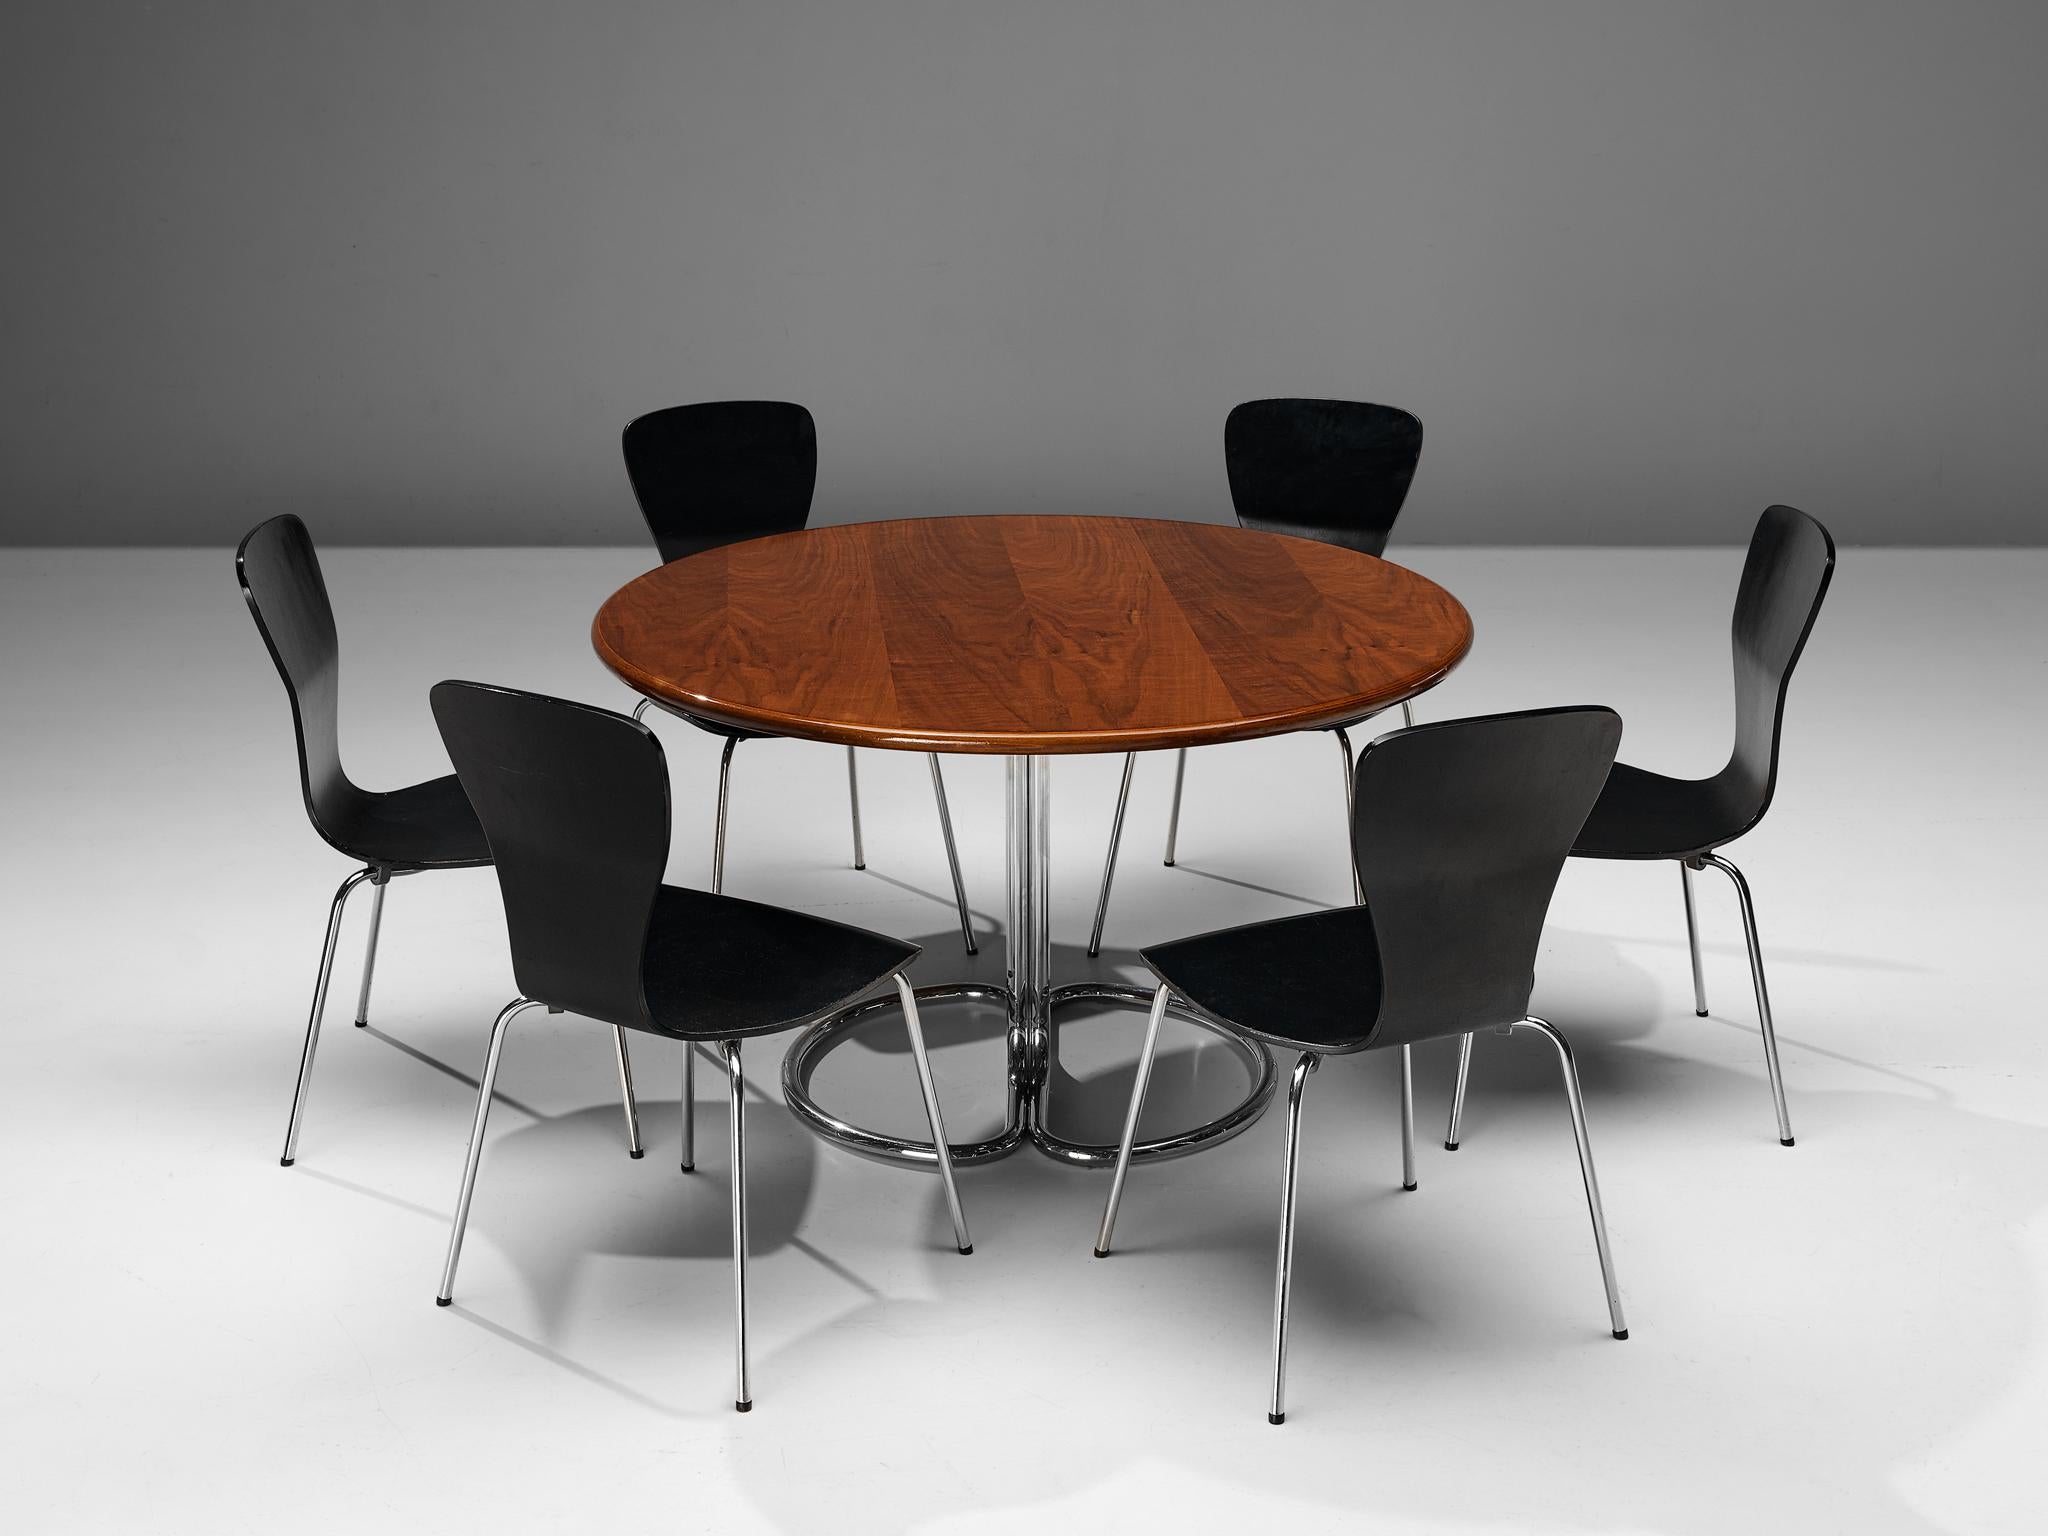 Tapio Wirkkala für Asko, Satz von sechs Esszimmerstühlen, Sperrholz, vernickelter Stahl, Finnland, 1950er Jahre
 
Wunderschönes Set von 'Nikke'-Stühlen des finnischen Designers Tapio Wirkkala. Dieses Modell ist ein wunderbares Beispiel für ein